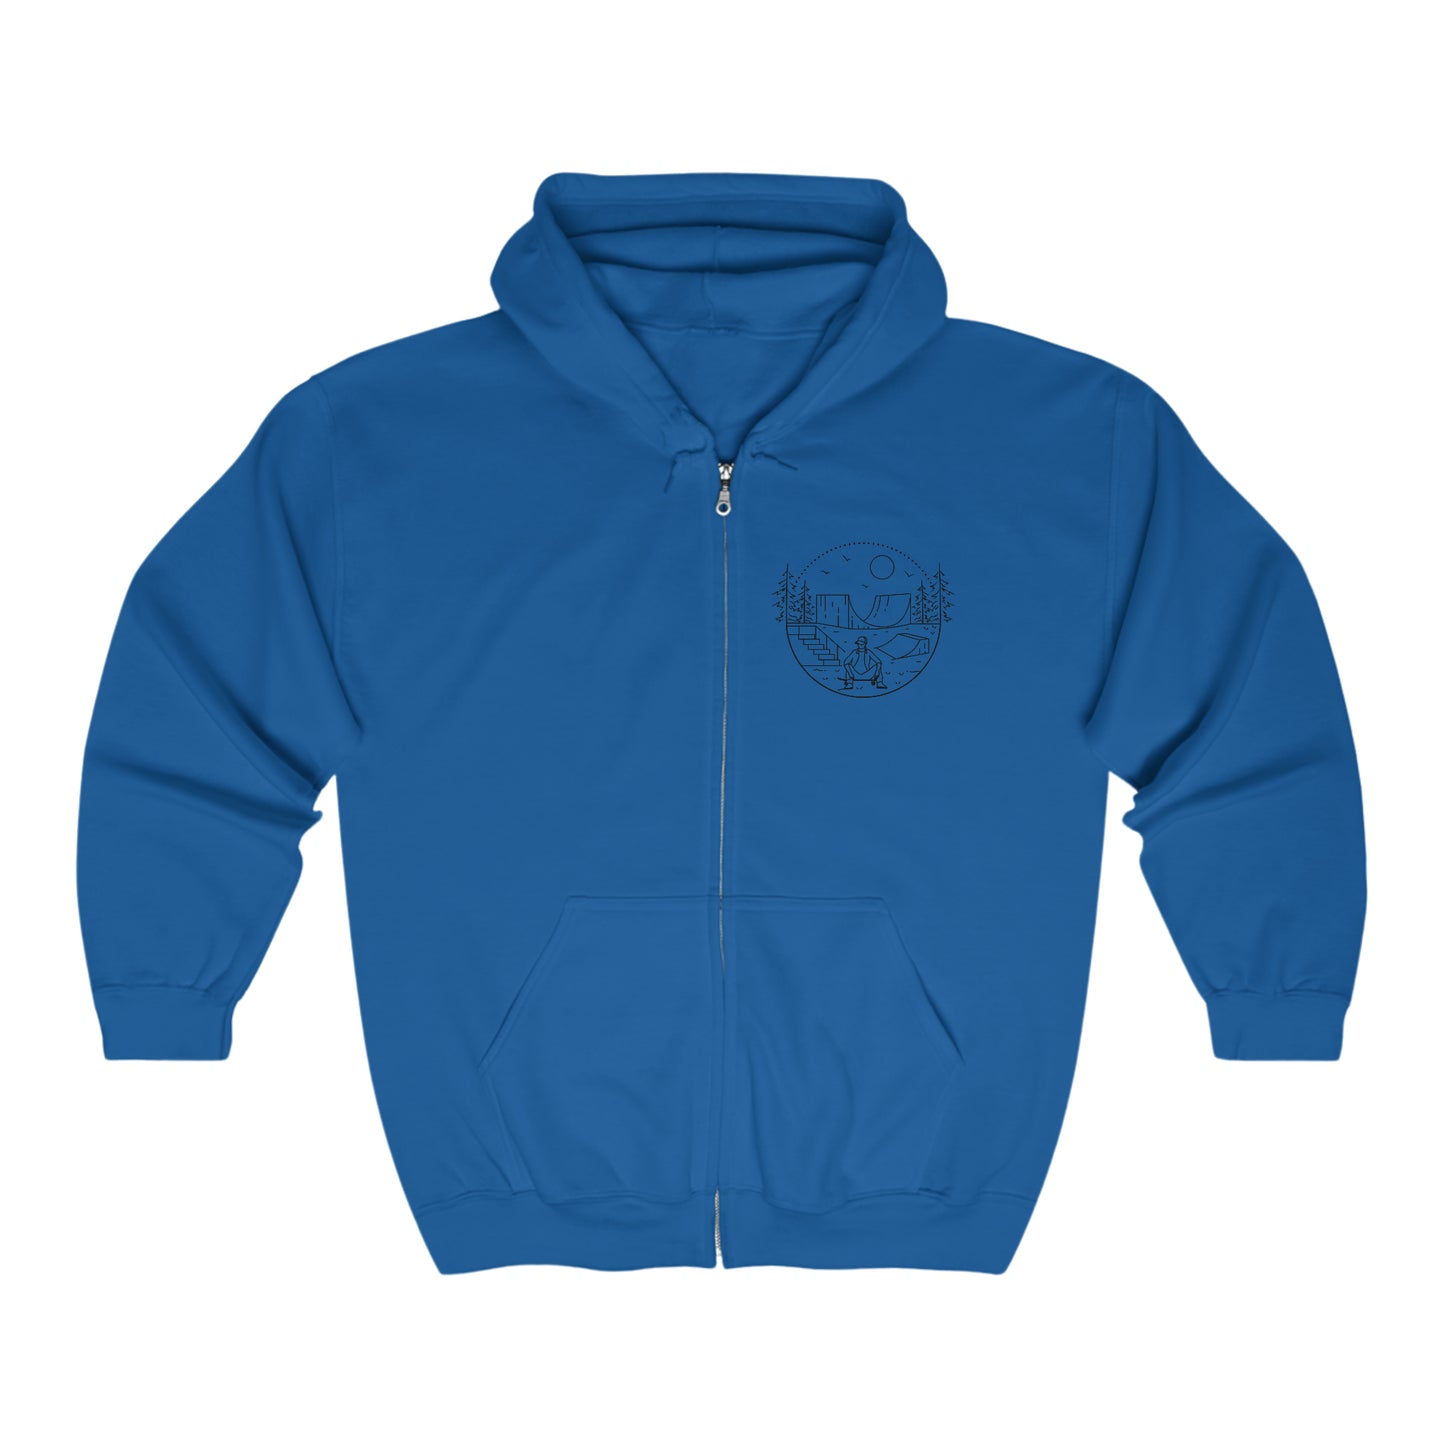 Skater - blk - Unisex Heavy Blend™ Full Zip Hooded Sweatshirt